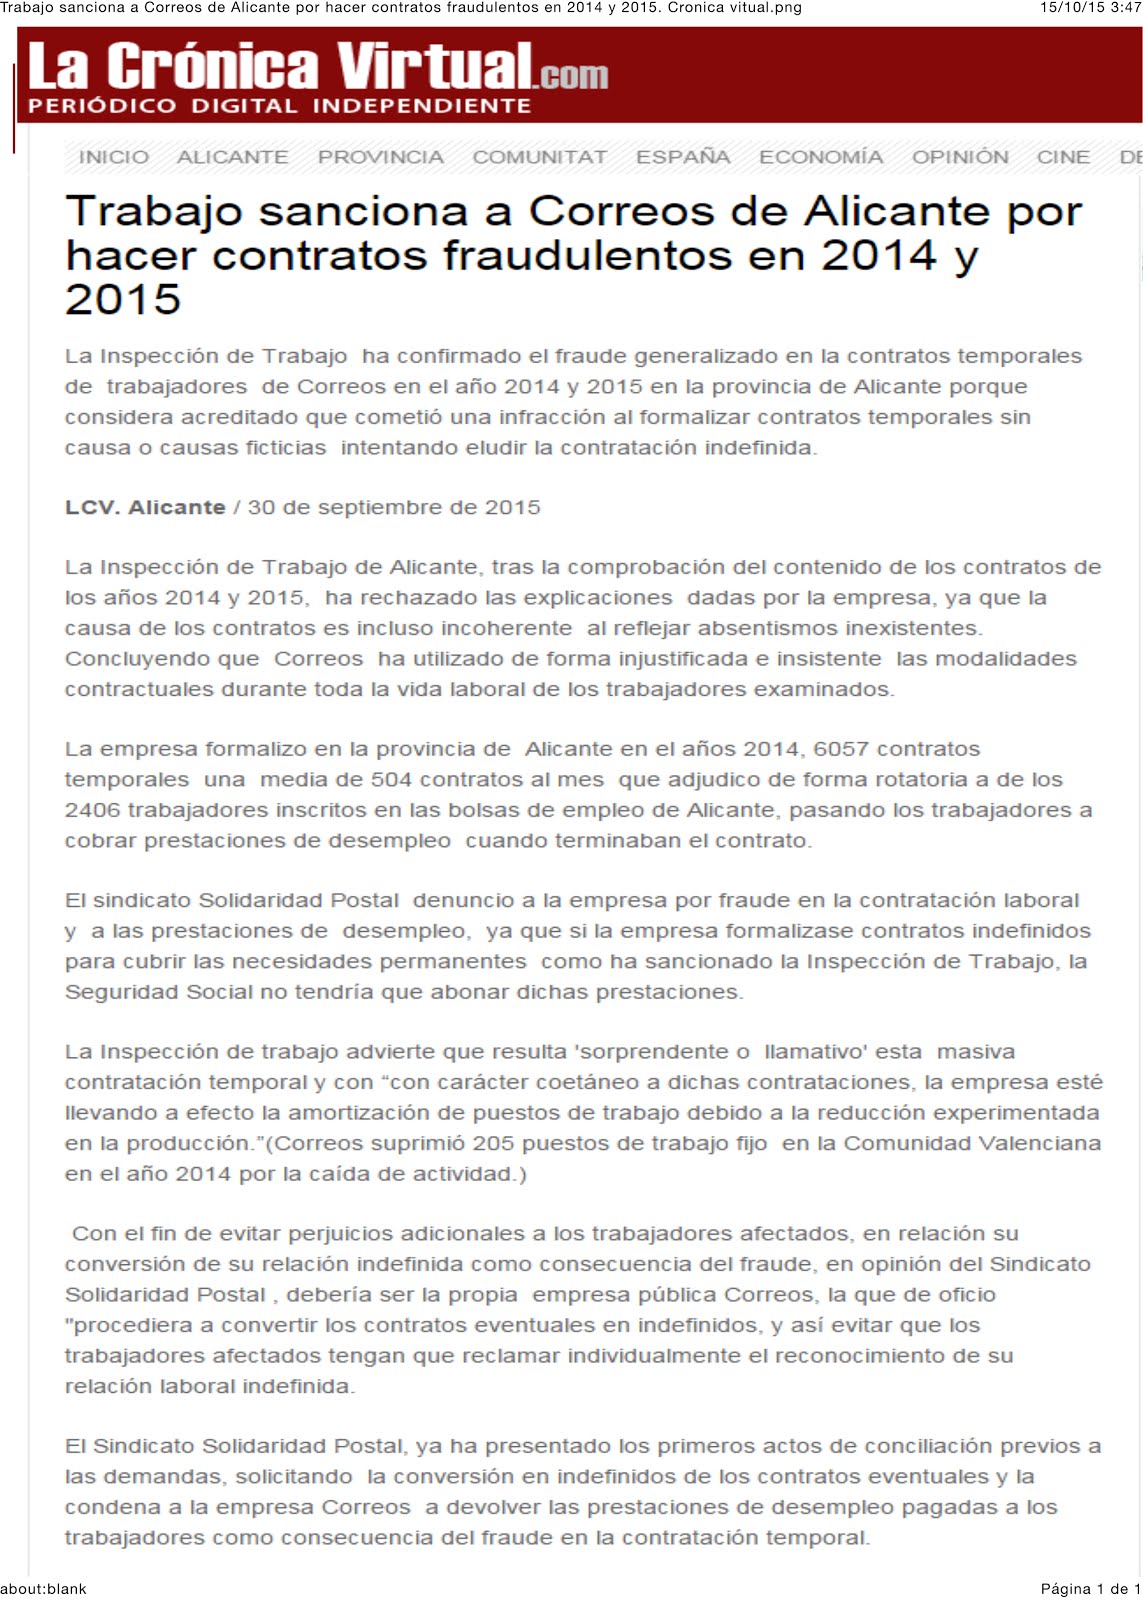 30/09/2015-PRENSA-Trabajo sanciona a Correos por hacer contratos fraudulentos en 2014 y 2015.